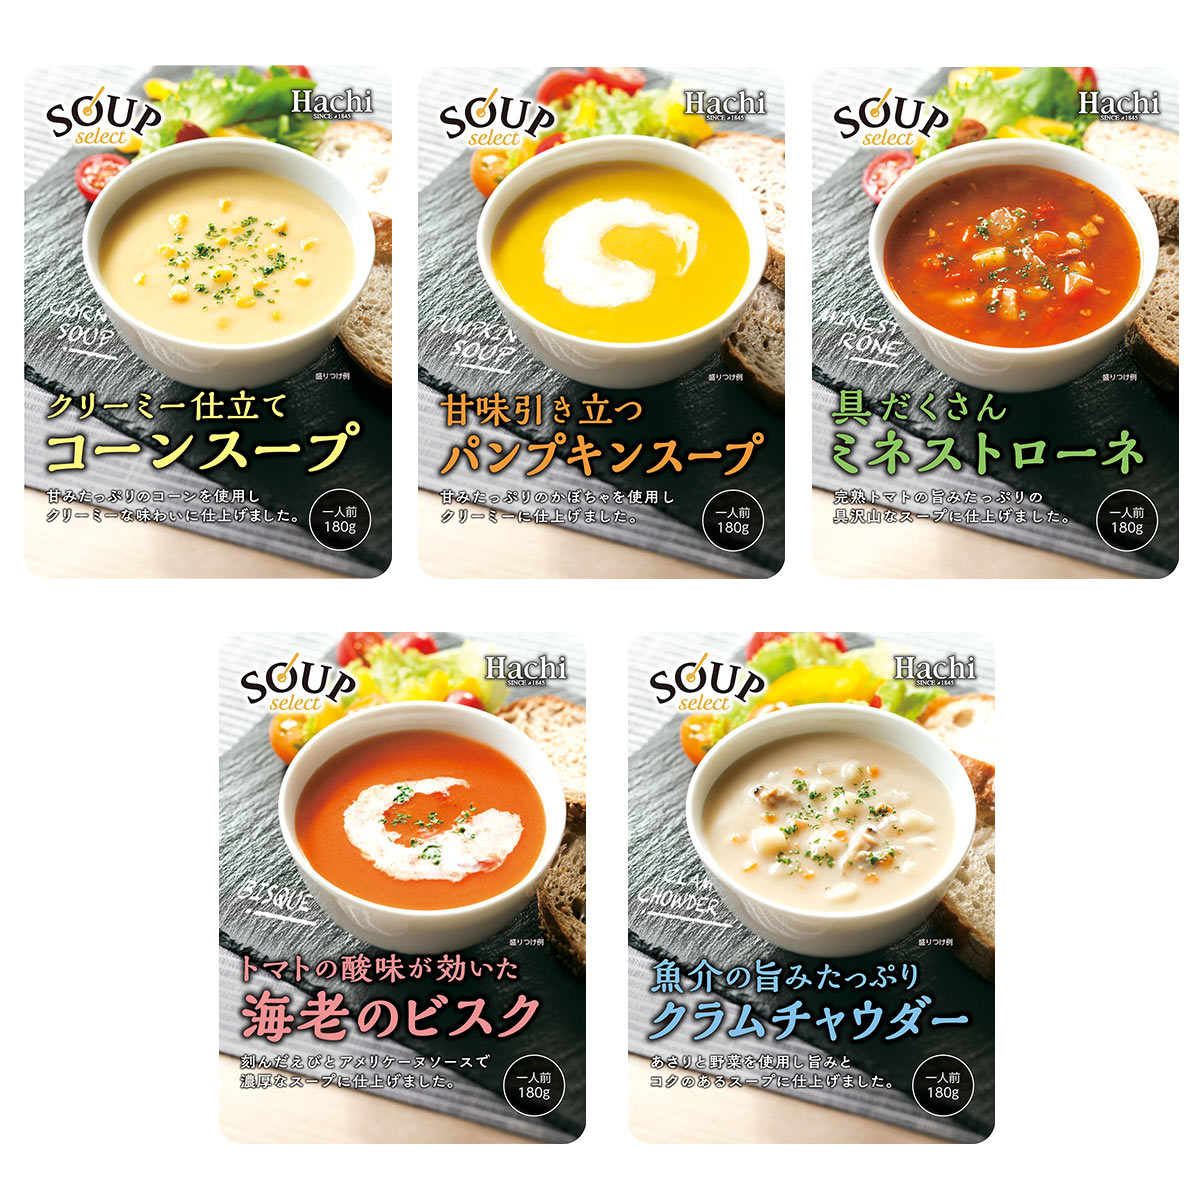 お手頃価格で気軽に楽しめるスープシリーズを新発売！ | ハチ食品（Hachi）のレトルトカレー・レトルト食品